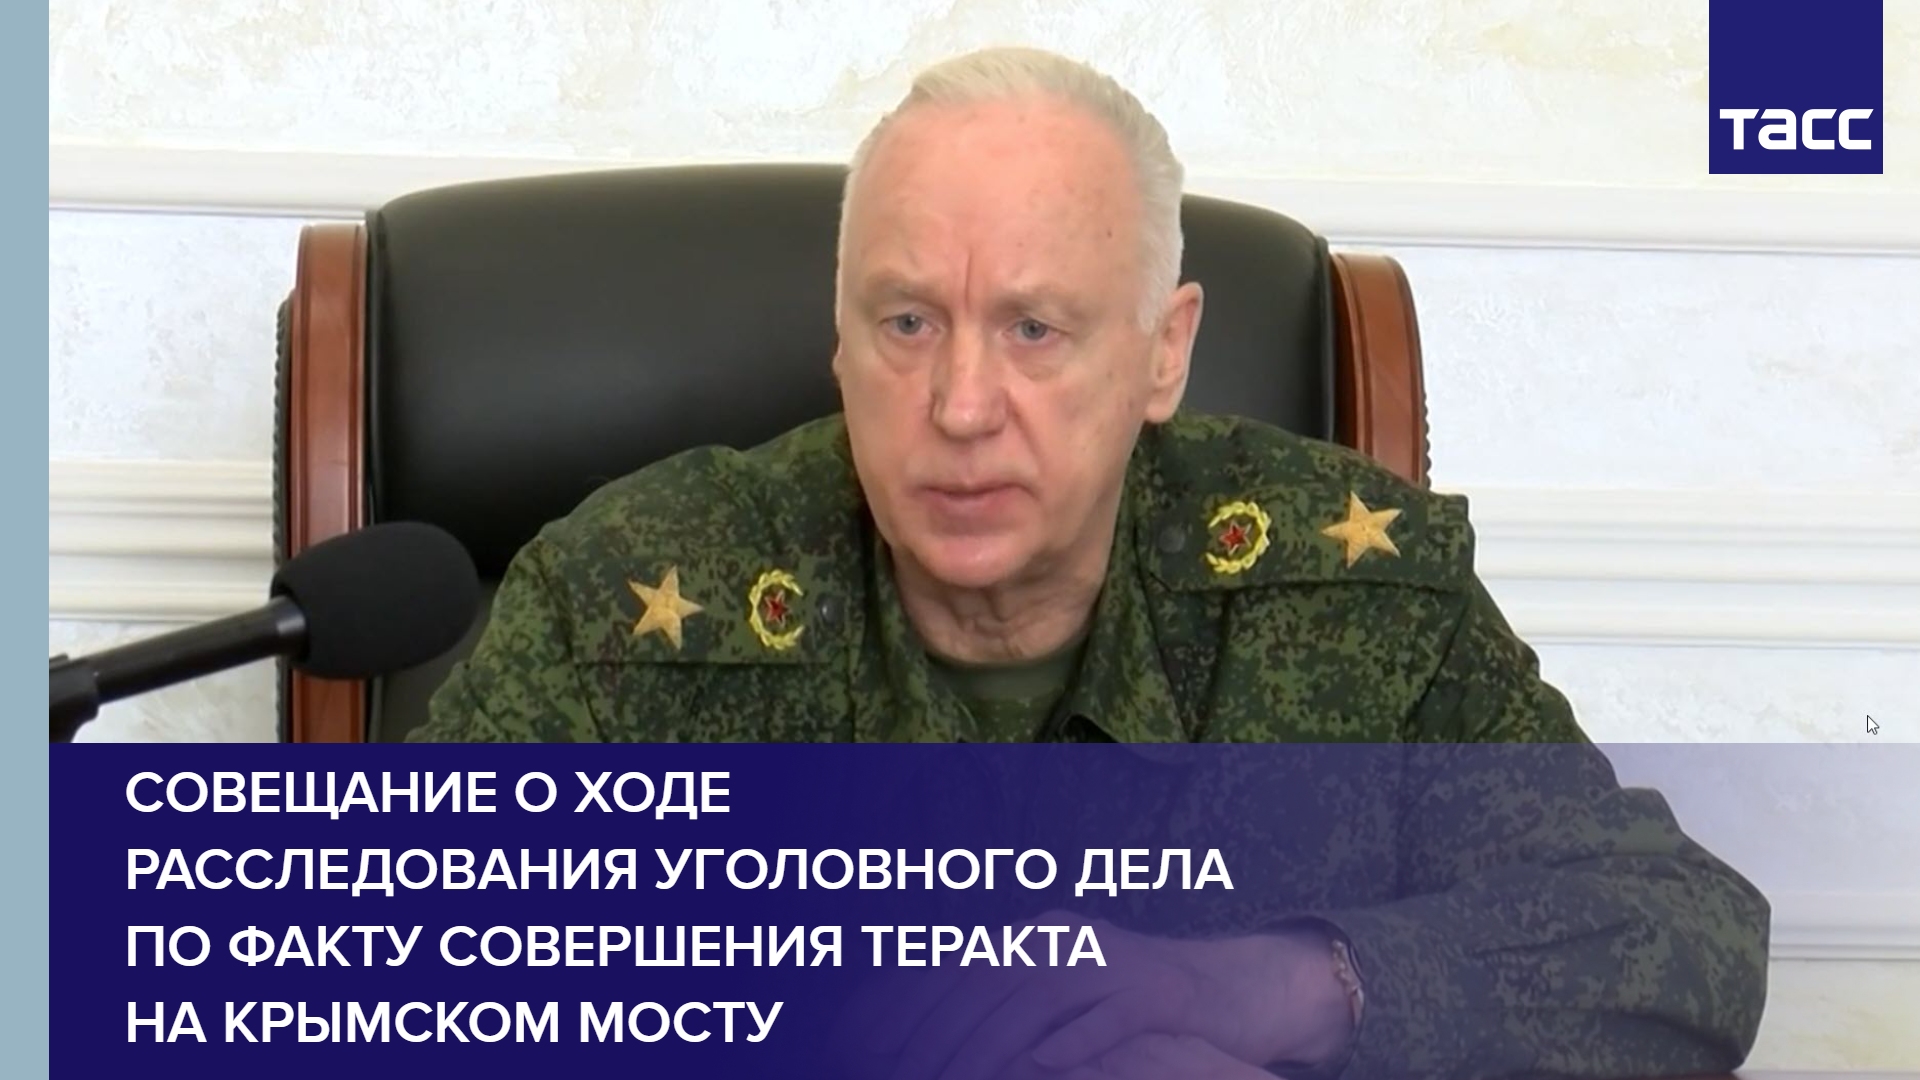 Совещание о ходе расследования уголовного дела по факту совершения теракта на Крымском мосту